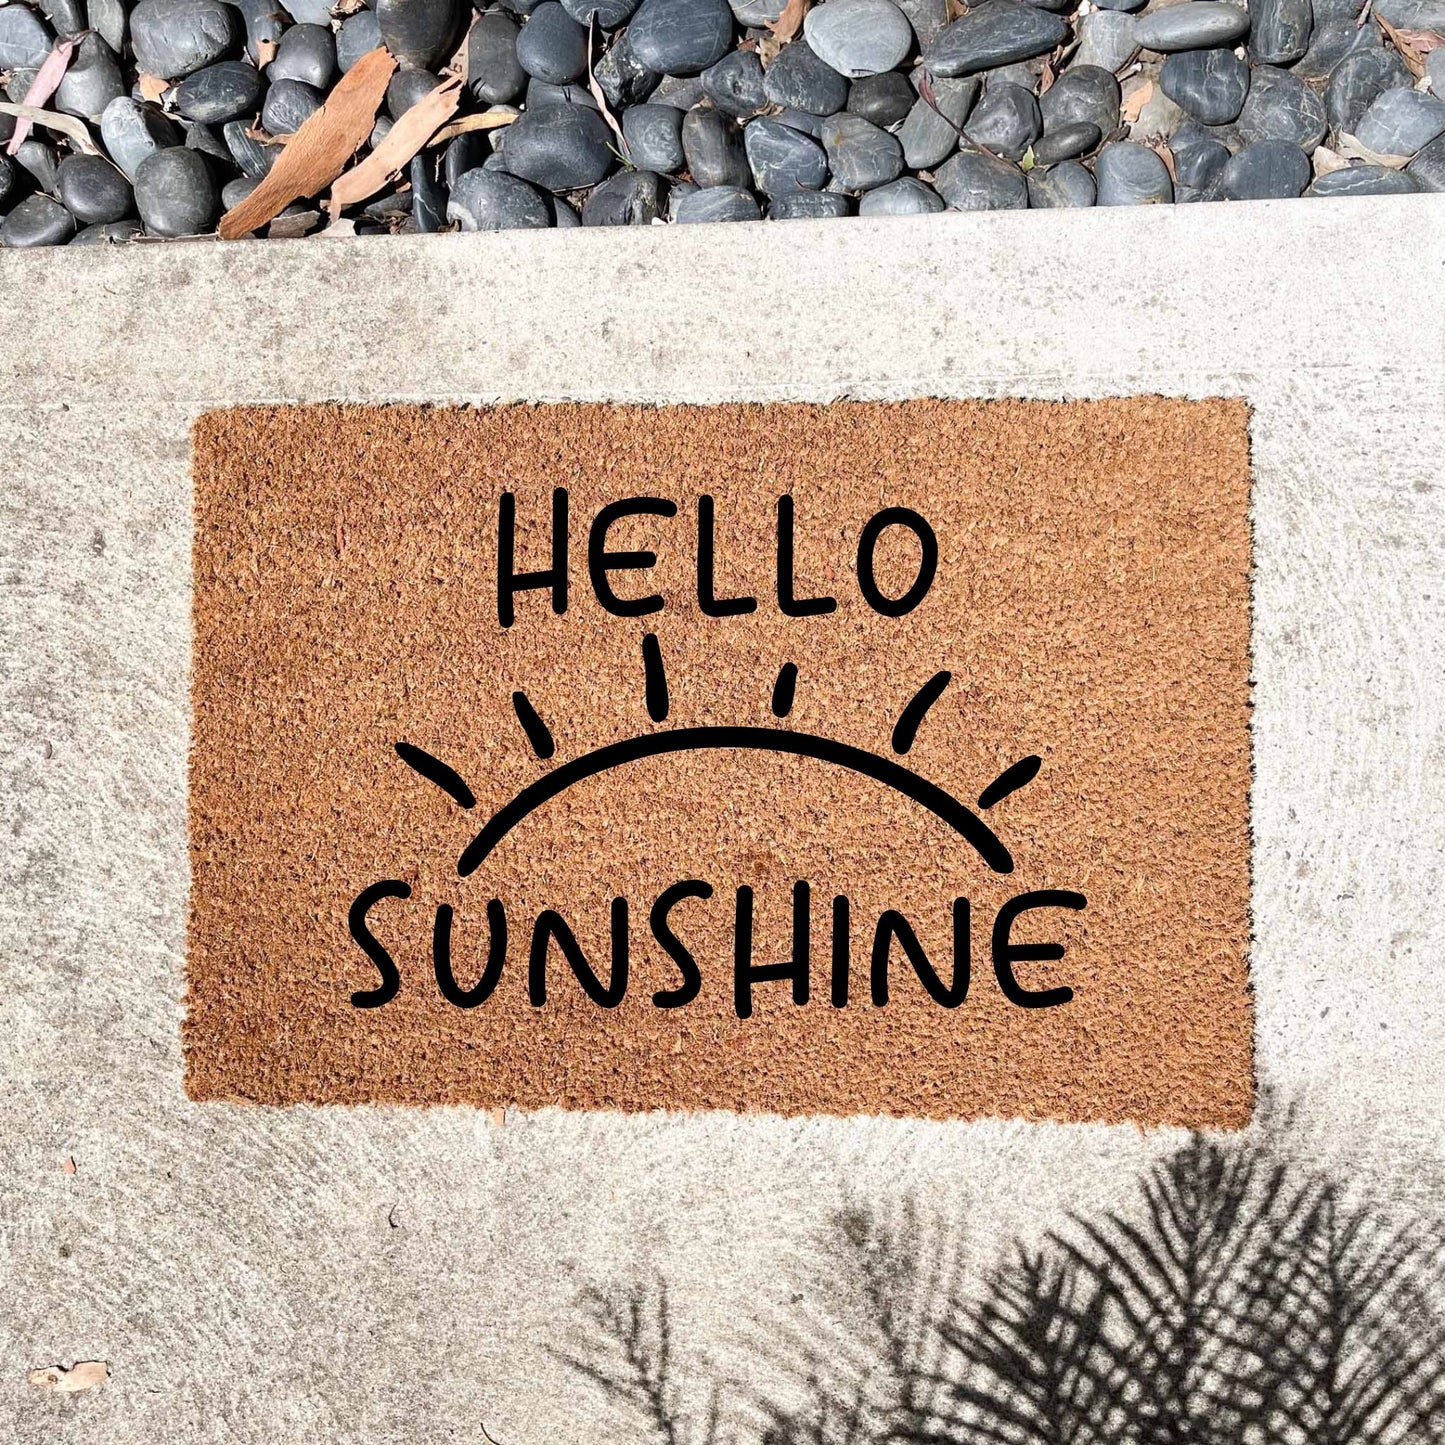 Hello Sunshine doormat, unique doormat, custom doormat, personalised doormat